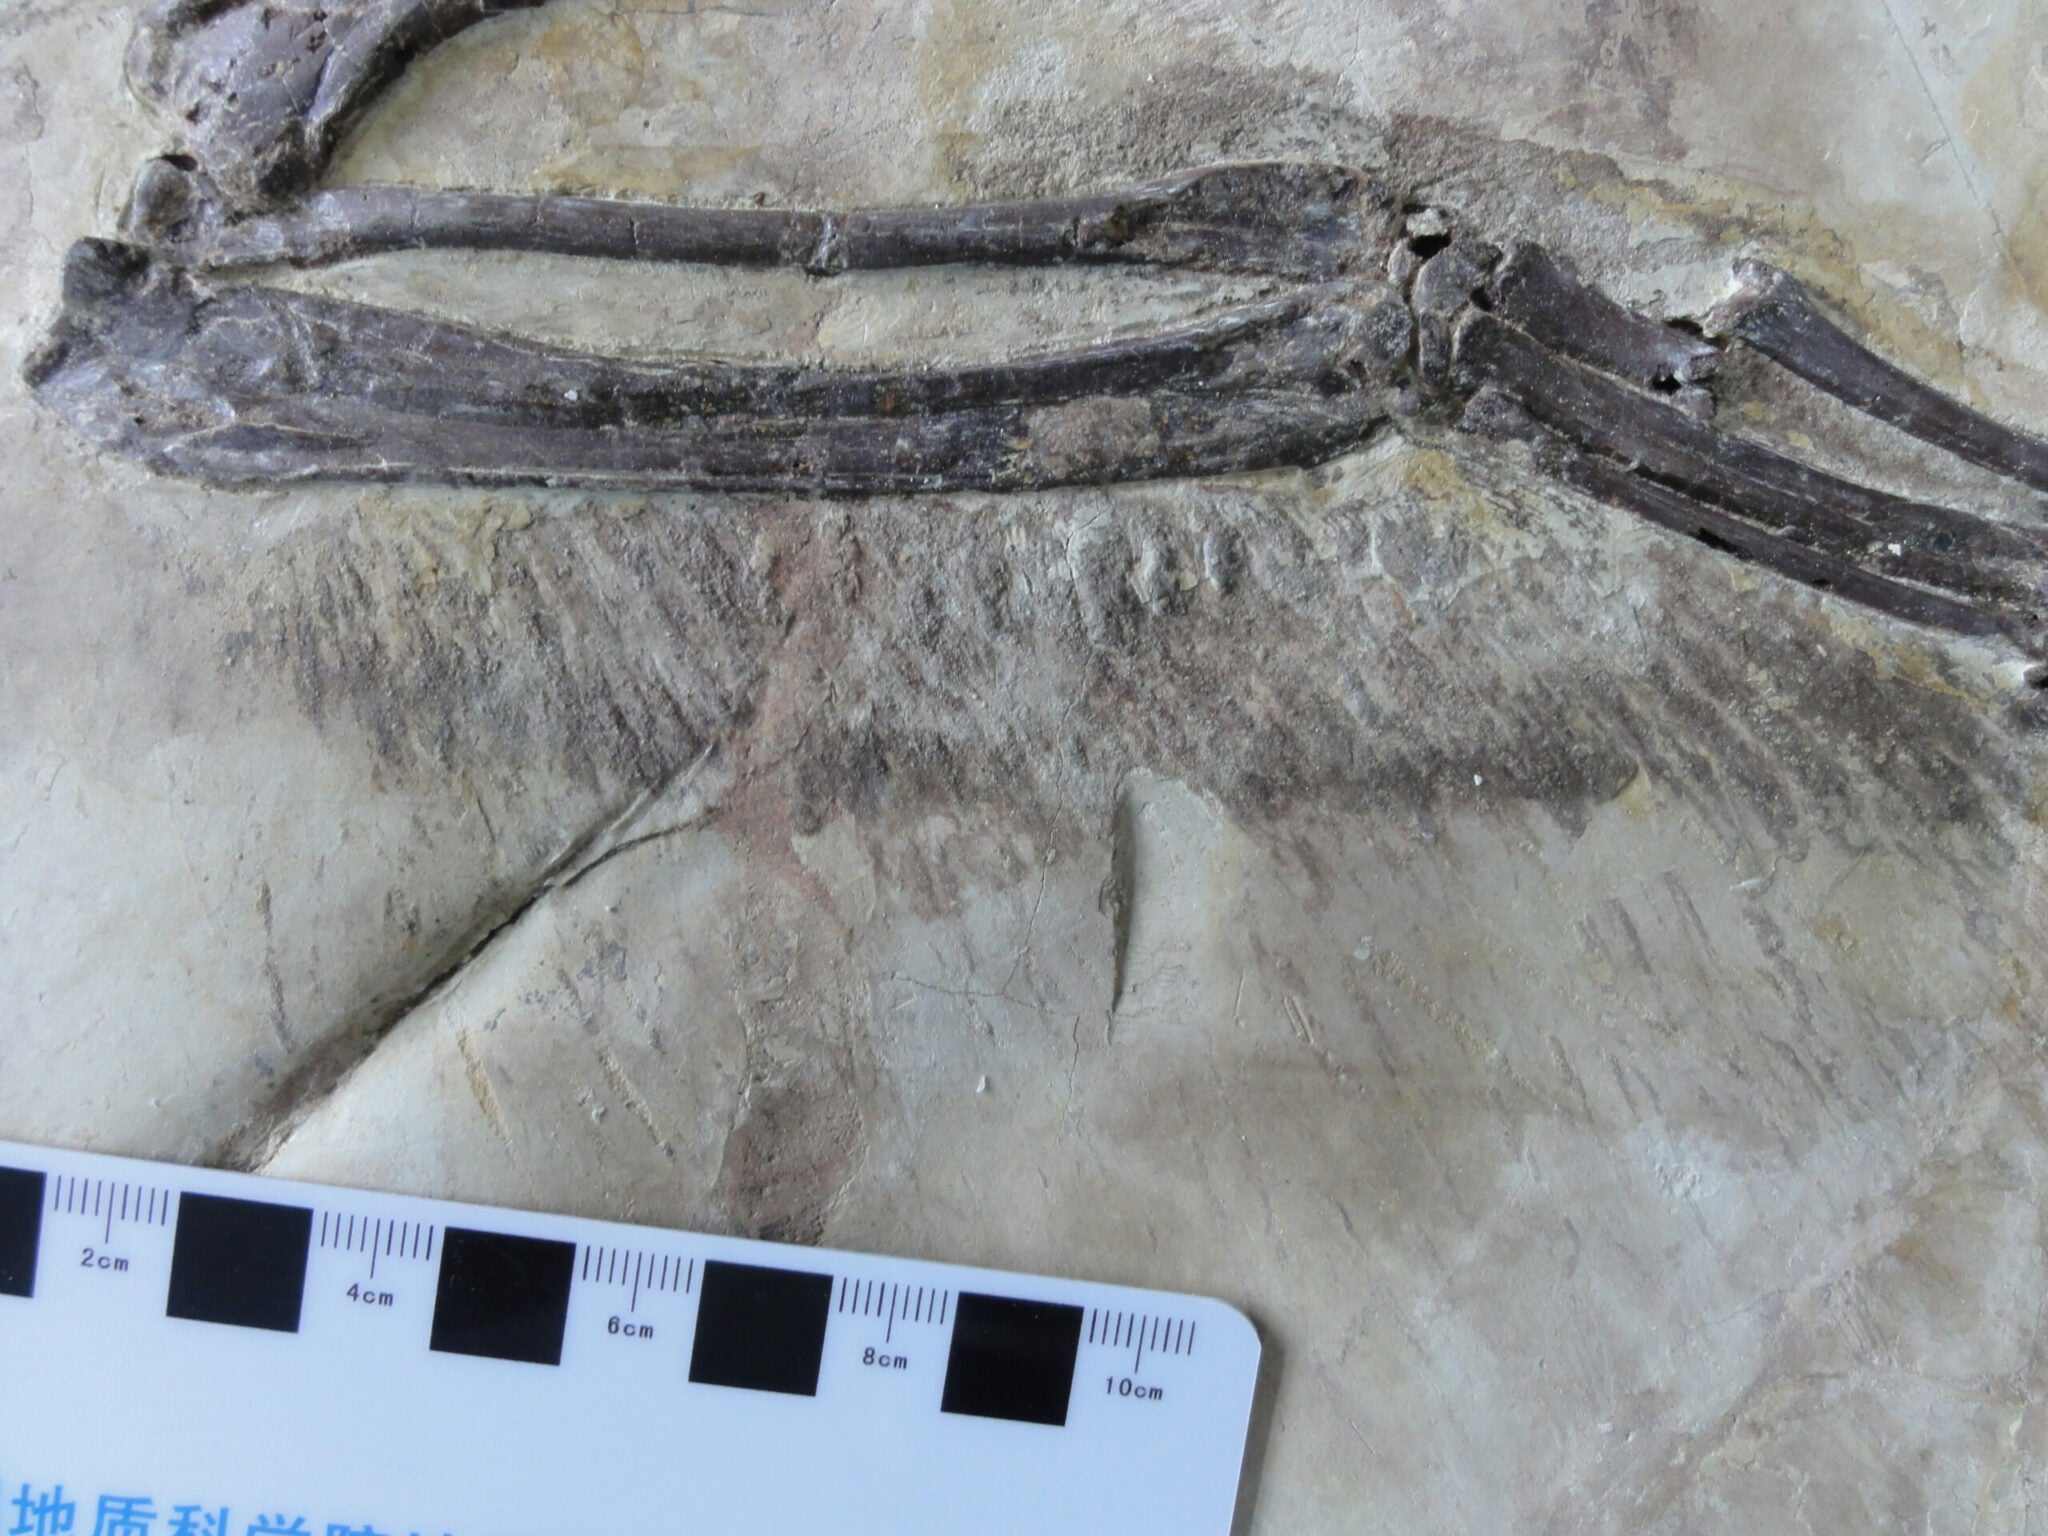 Forskare har precis hittat velociraptors fjäderklädda kinesiska kusin 3